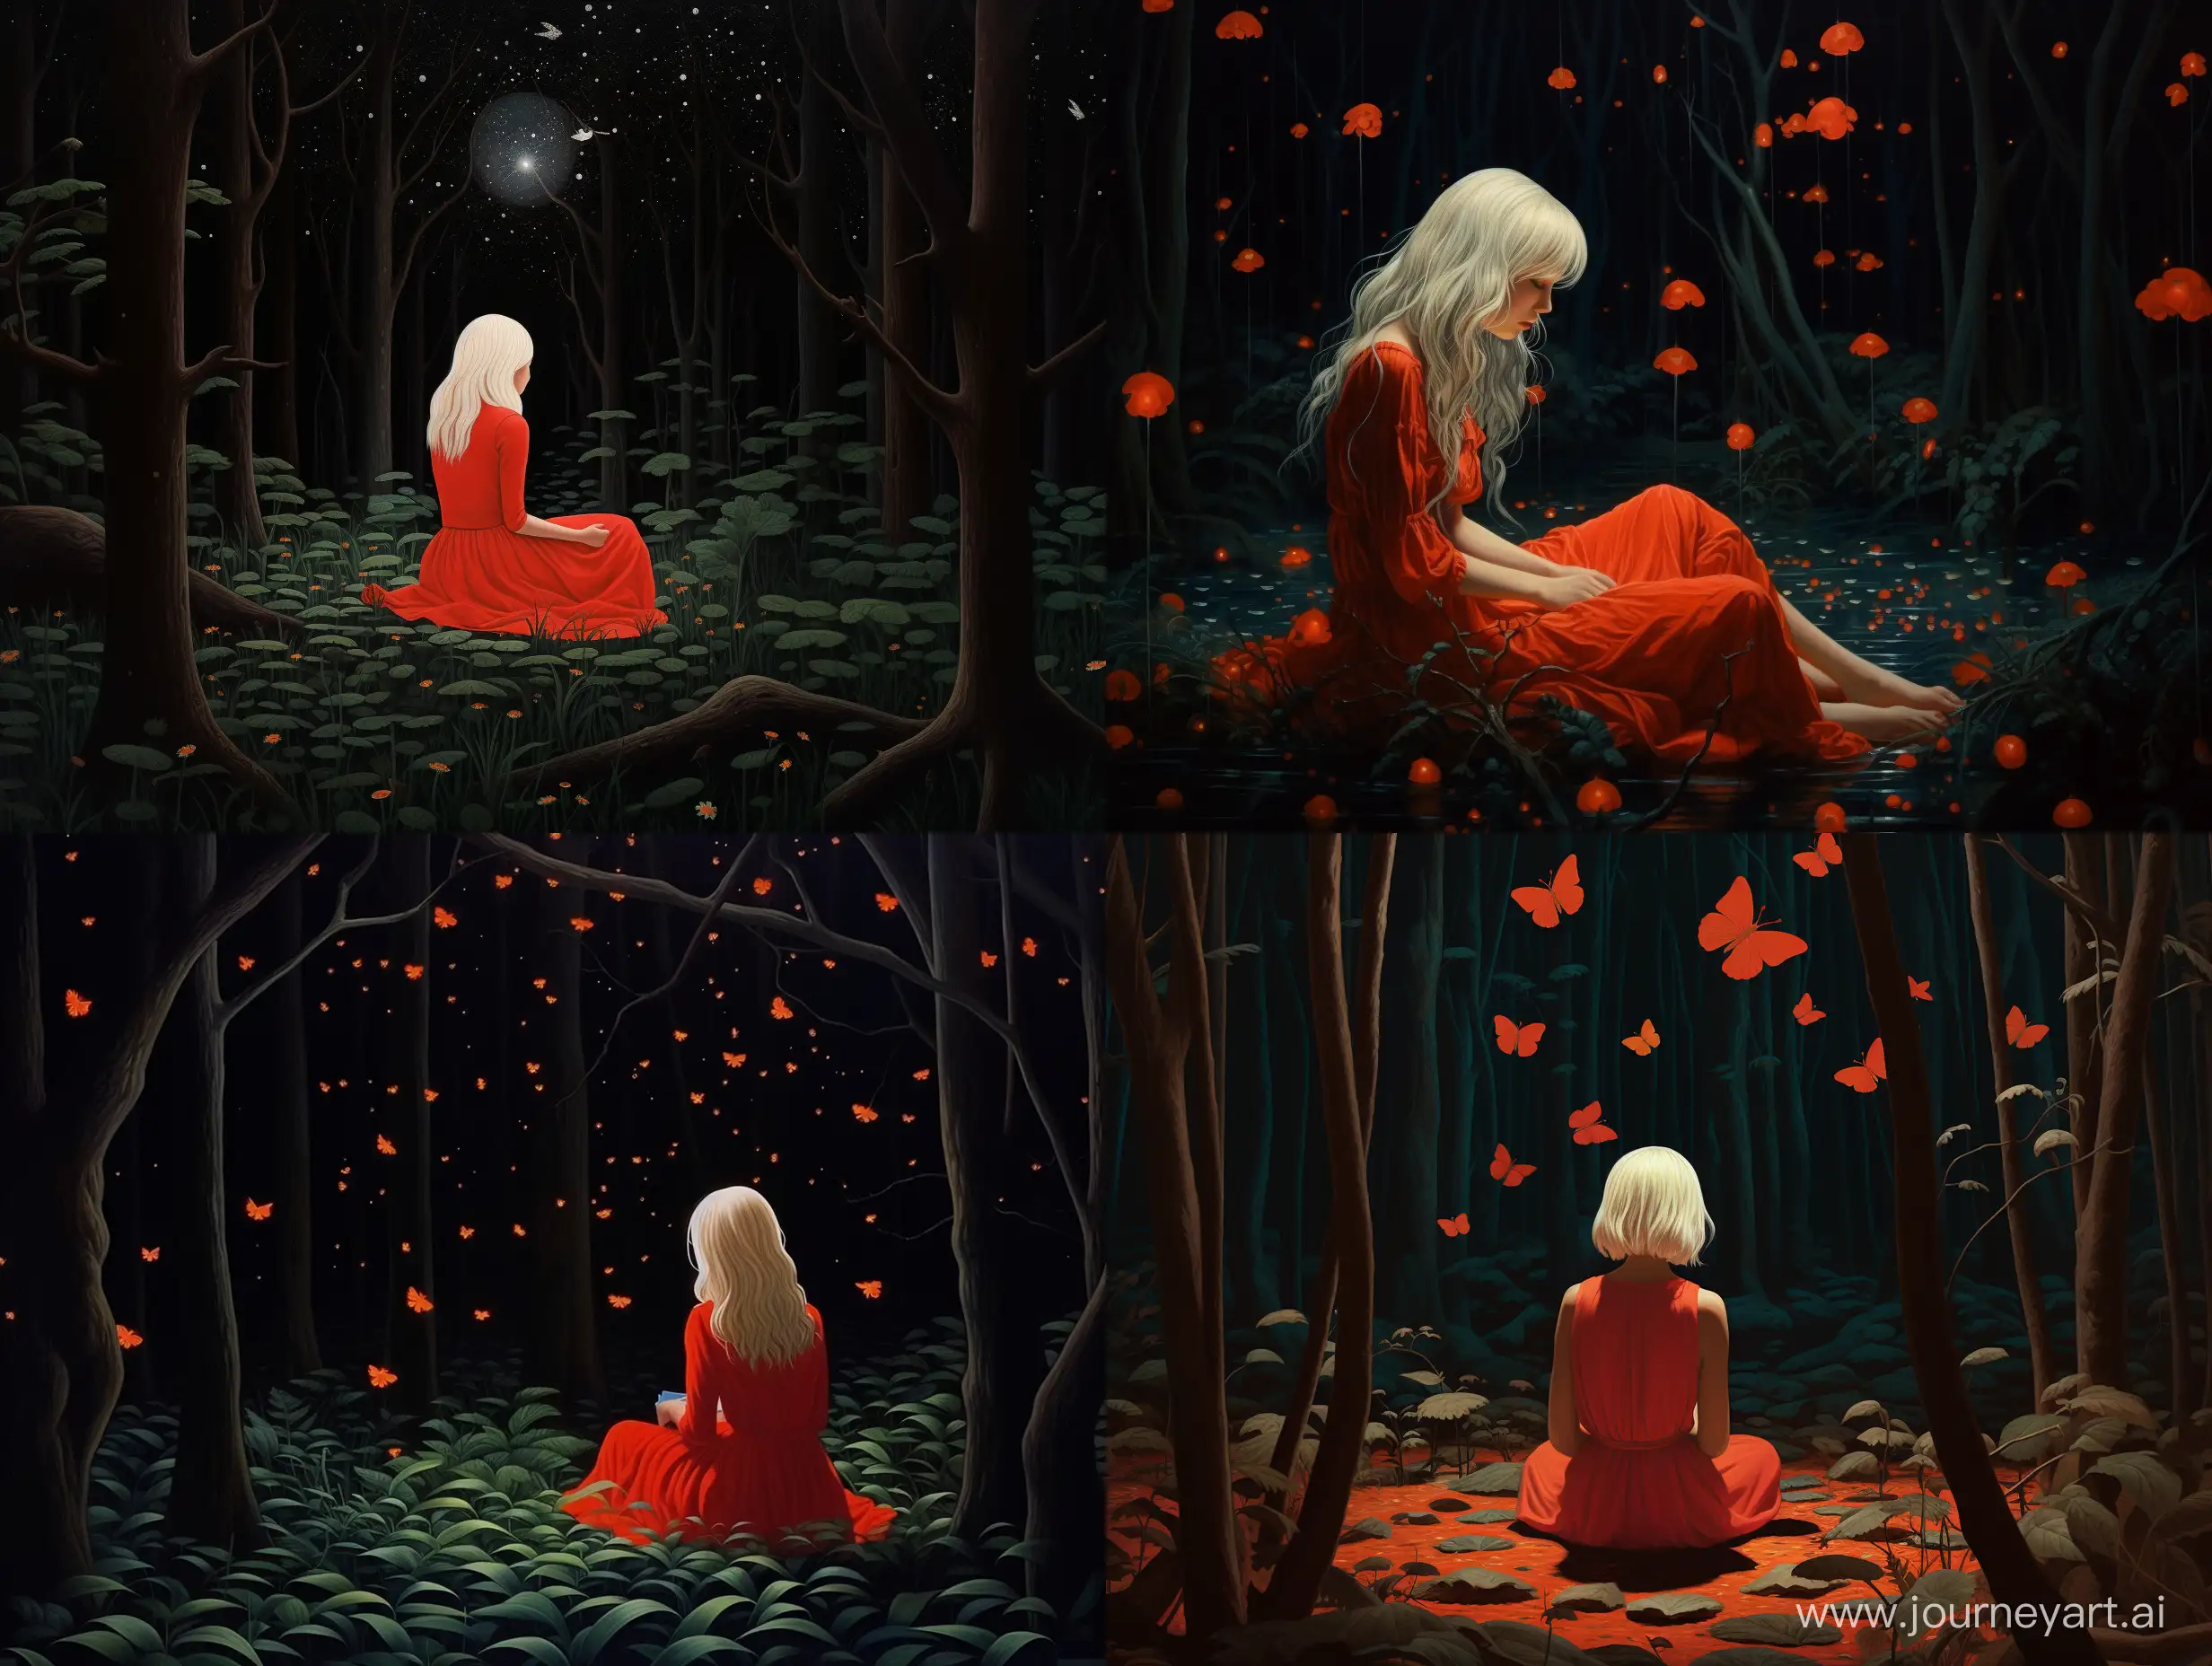 Девушка в пышном красном платье сидит в лесу. У нее белые волосы. Вокруг лес темный, везде летают светлячки